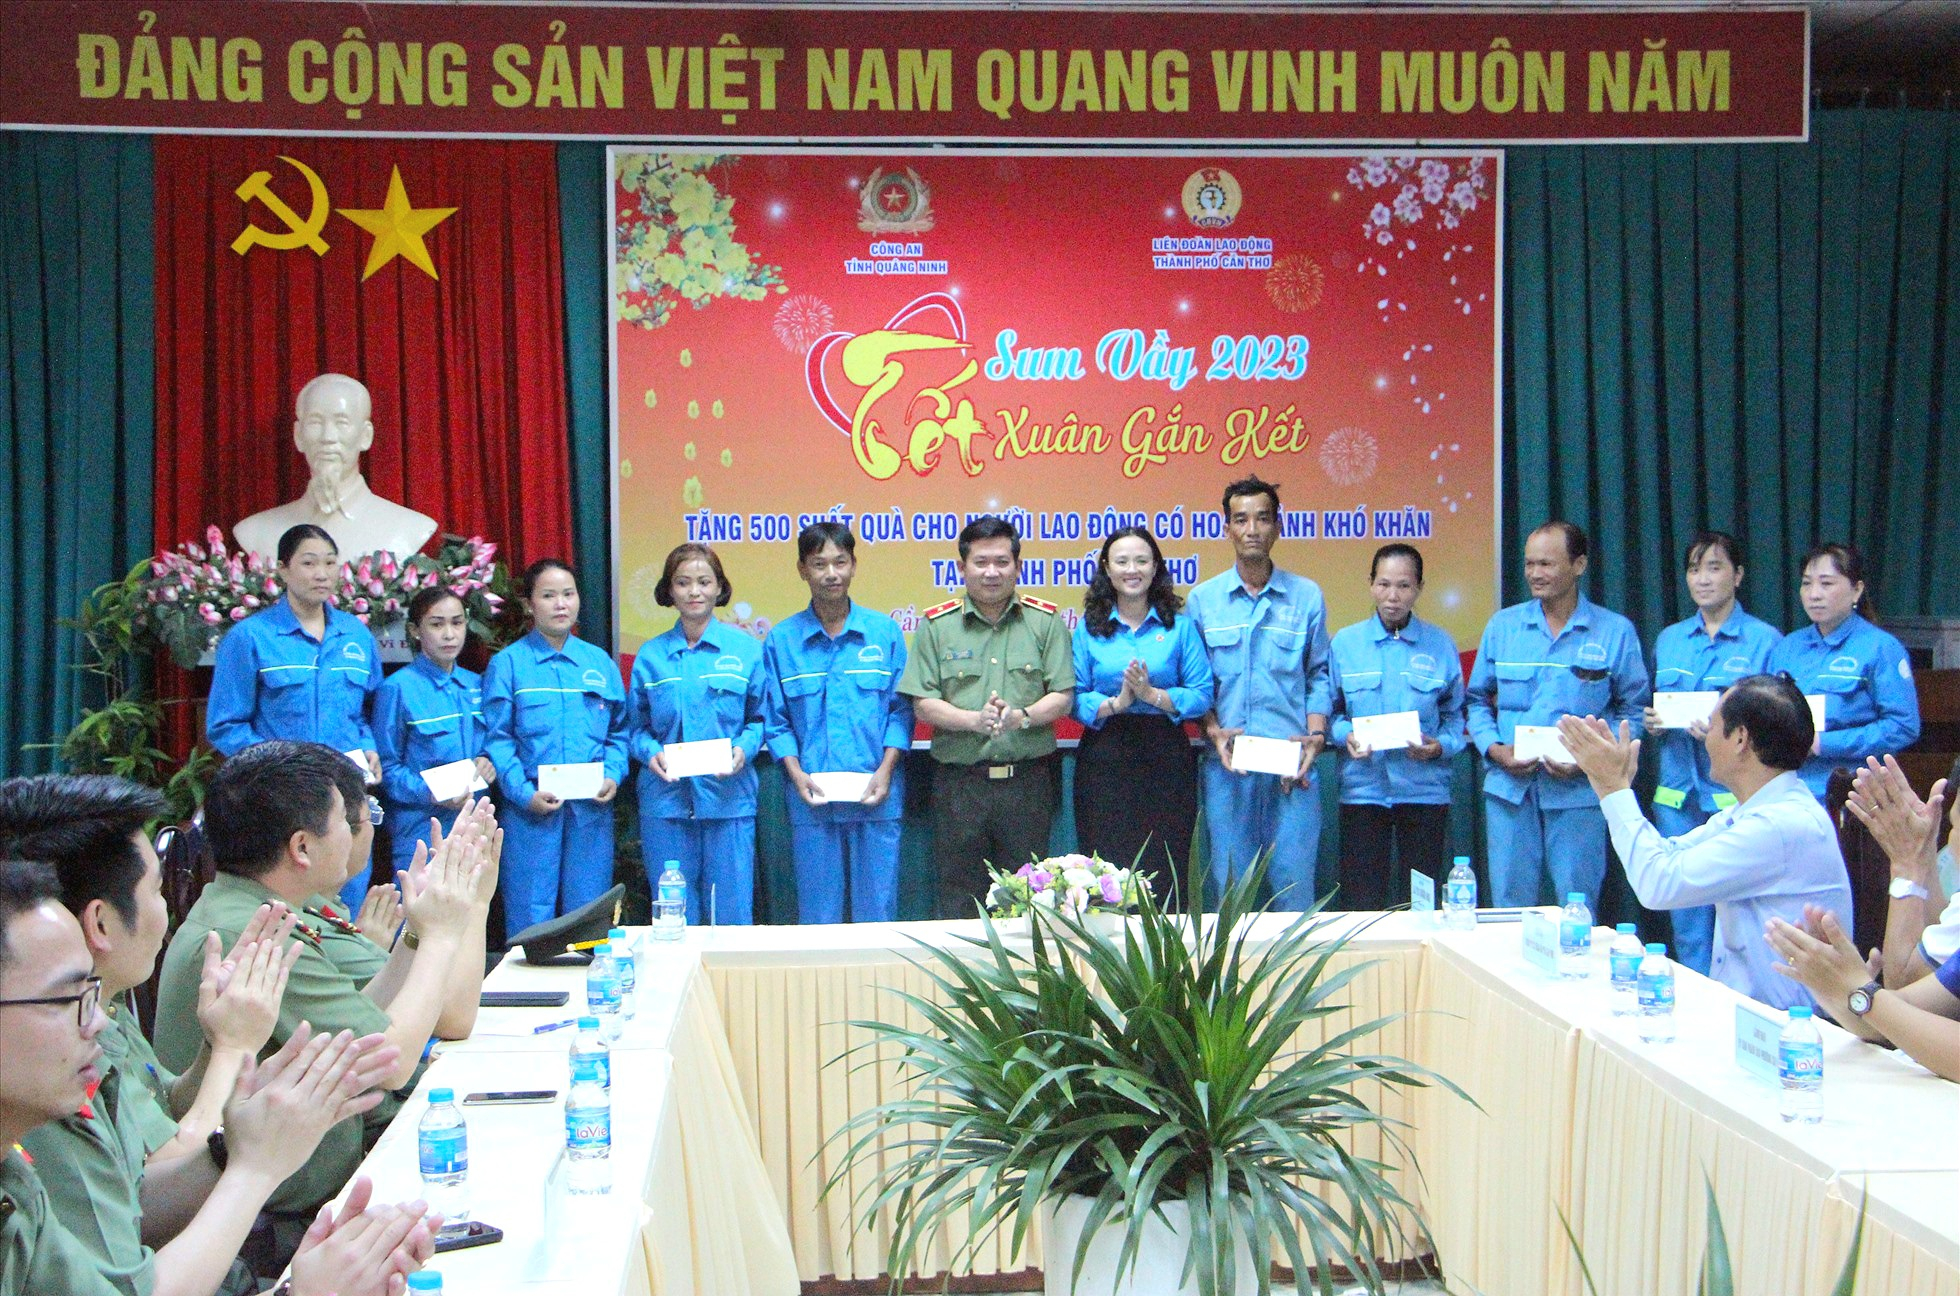 Thiếu tướng Đinh Văn Nơi - Giám đốc Công an tỉnh Quảng Ninh và bà Lê Thị Sương Mai - Chủ tịch Liên đoàn lao động TP. Cần Thơ tặng quà cho người lao động.